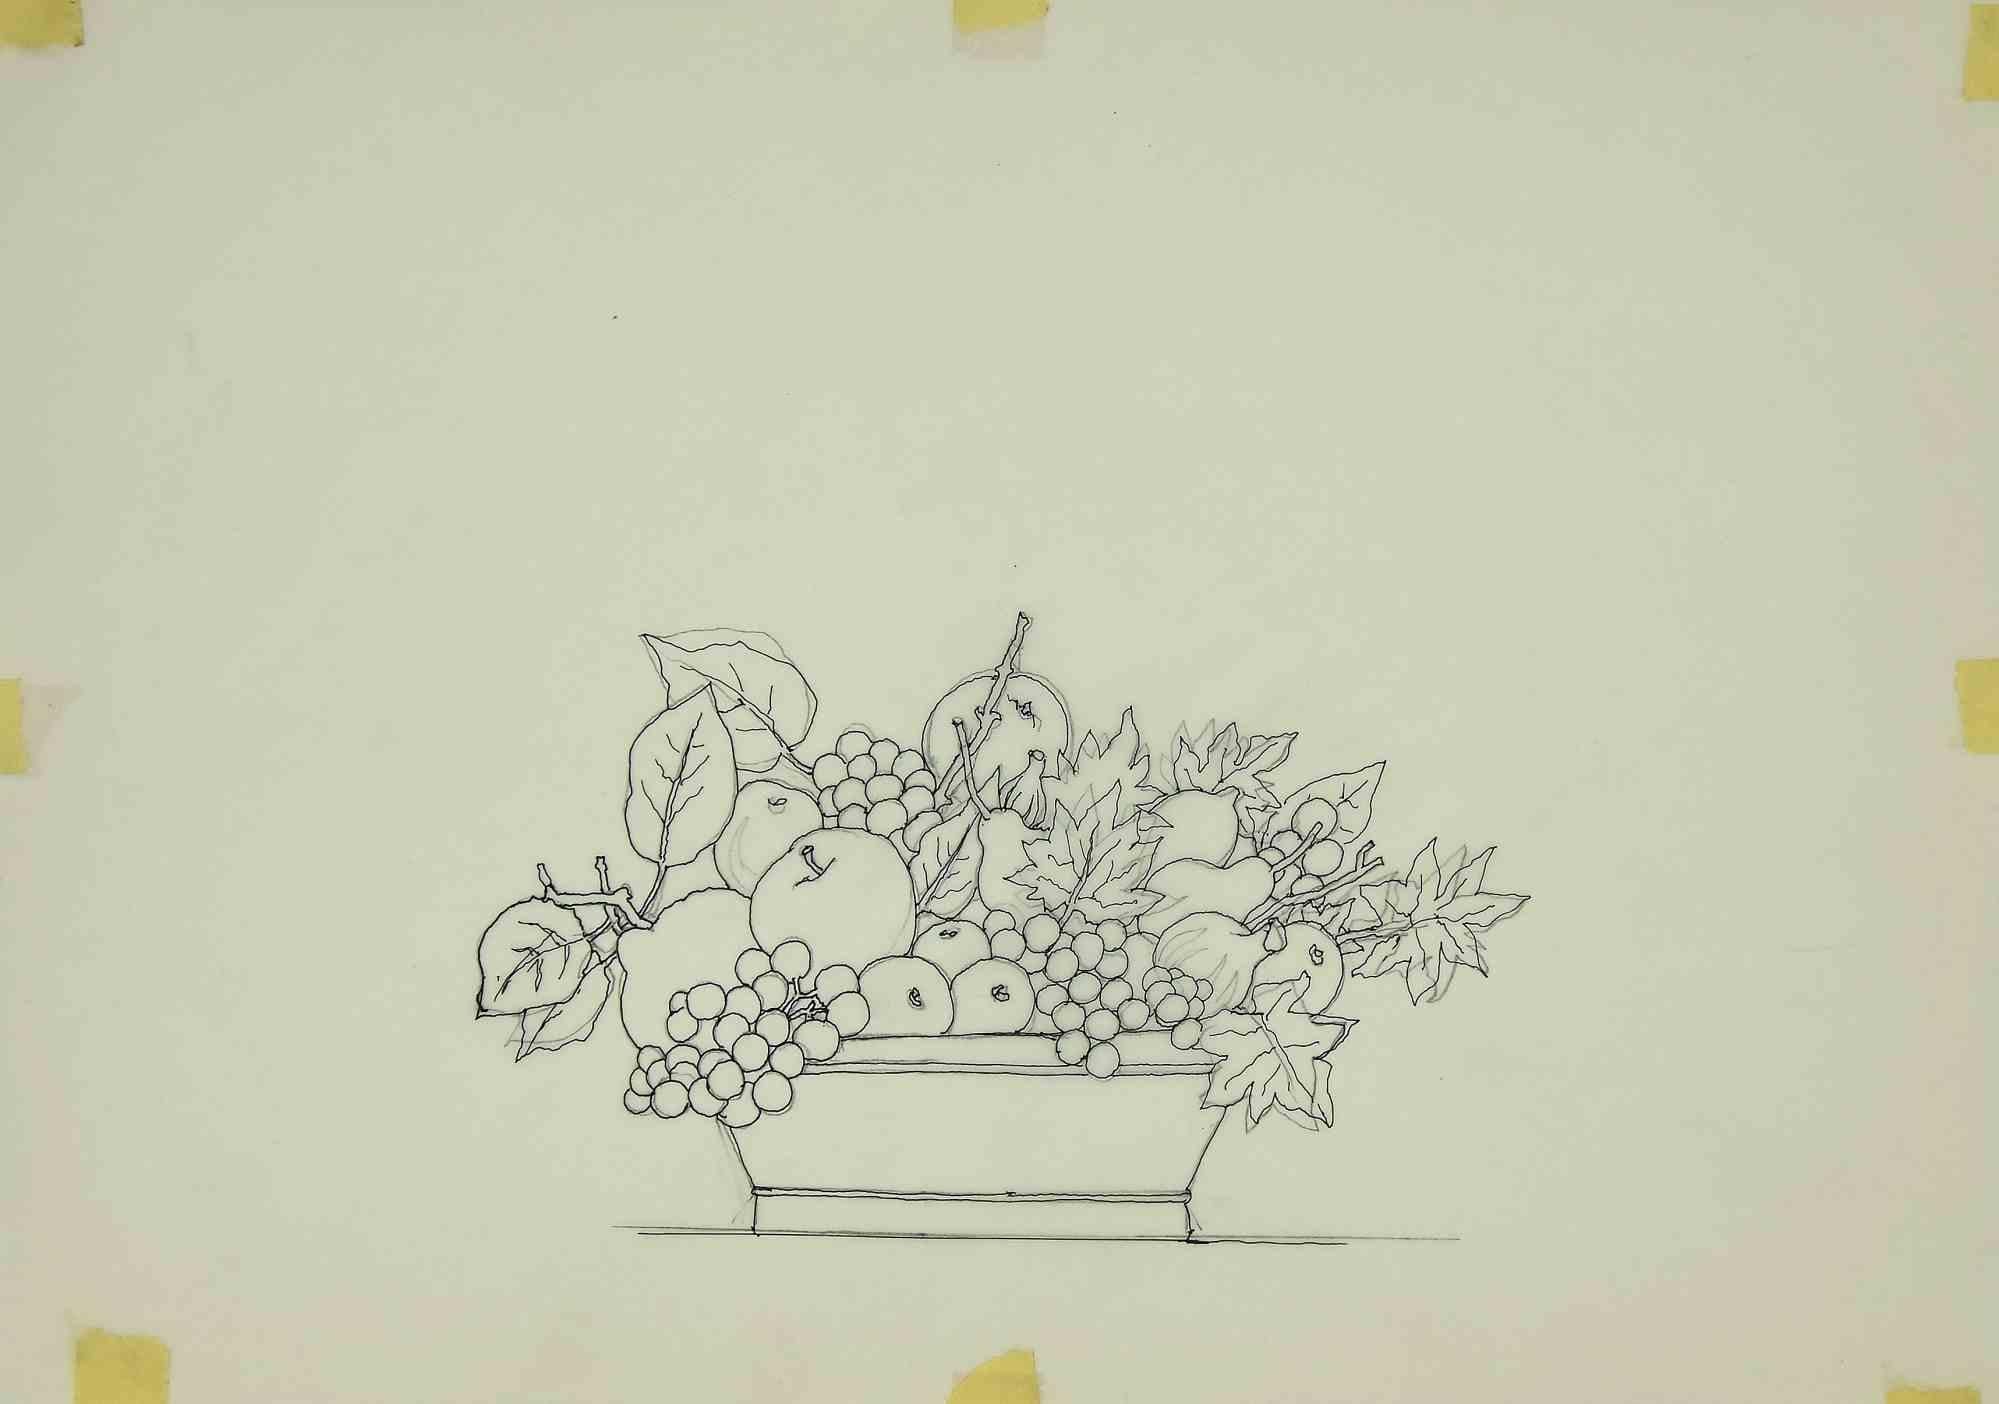 La nature morte est une œuvre d'art moderne réalisée par Leo Guida dans les années 1970.

Dessin au feutre sur papier.

Bon état.

Leo Guida a su tisser un entretien productif sur l'art et la fonction de l'artiste avec de nombreuses générations de